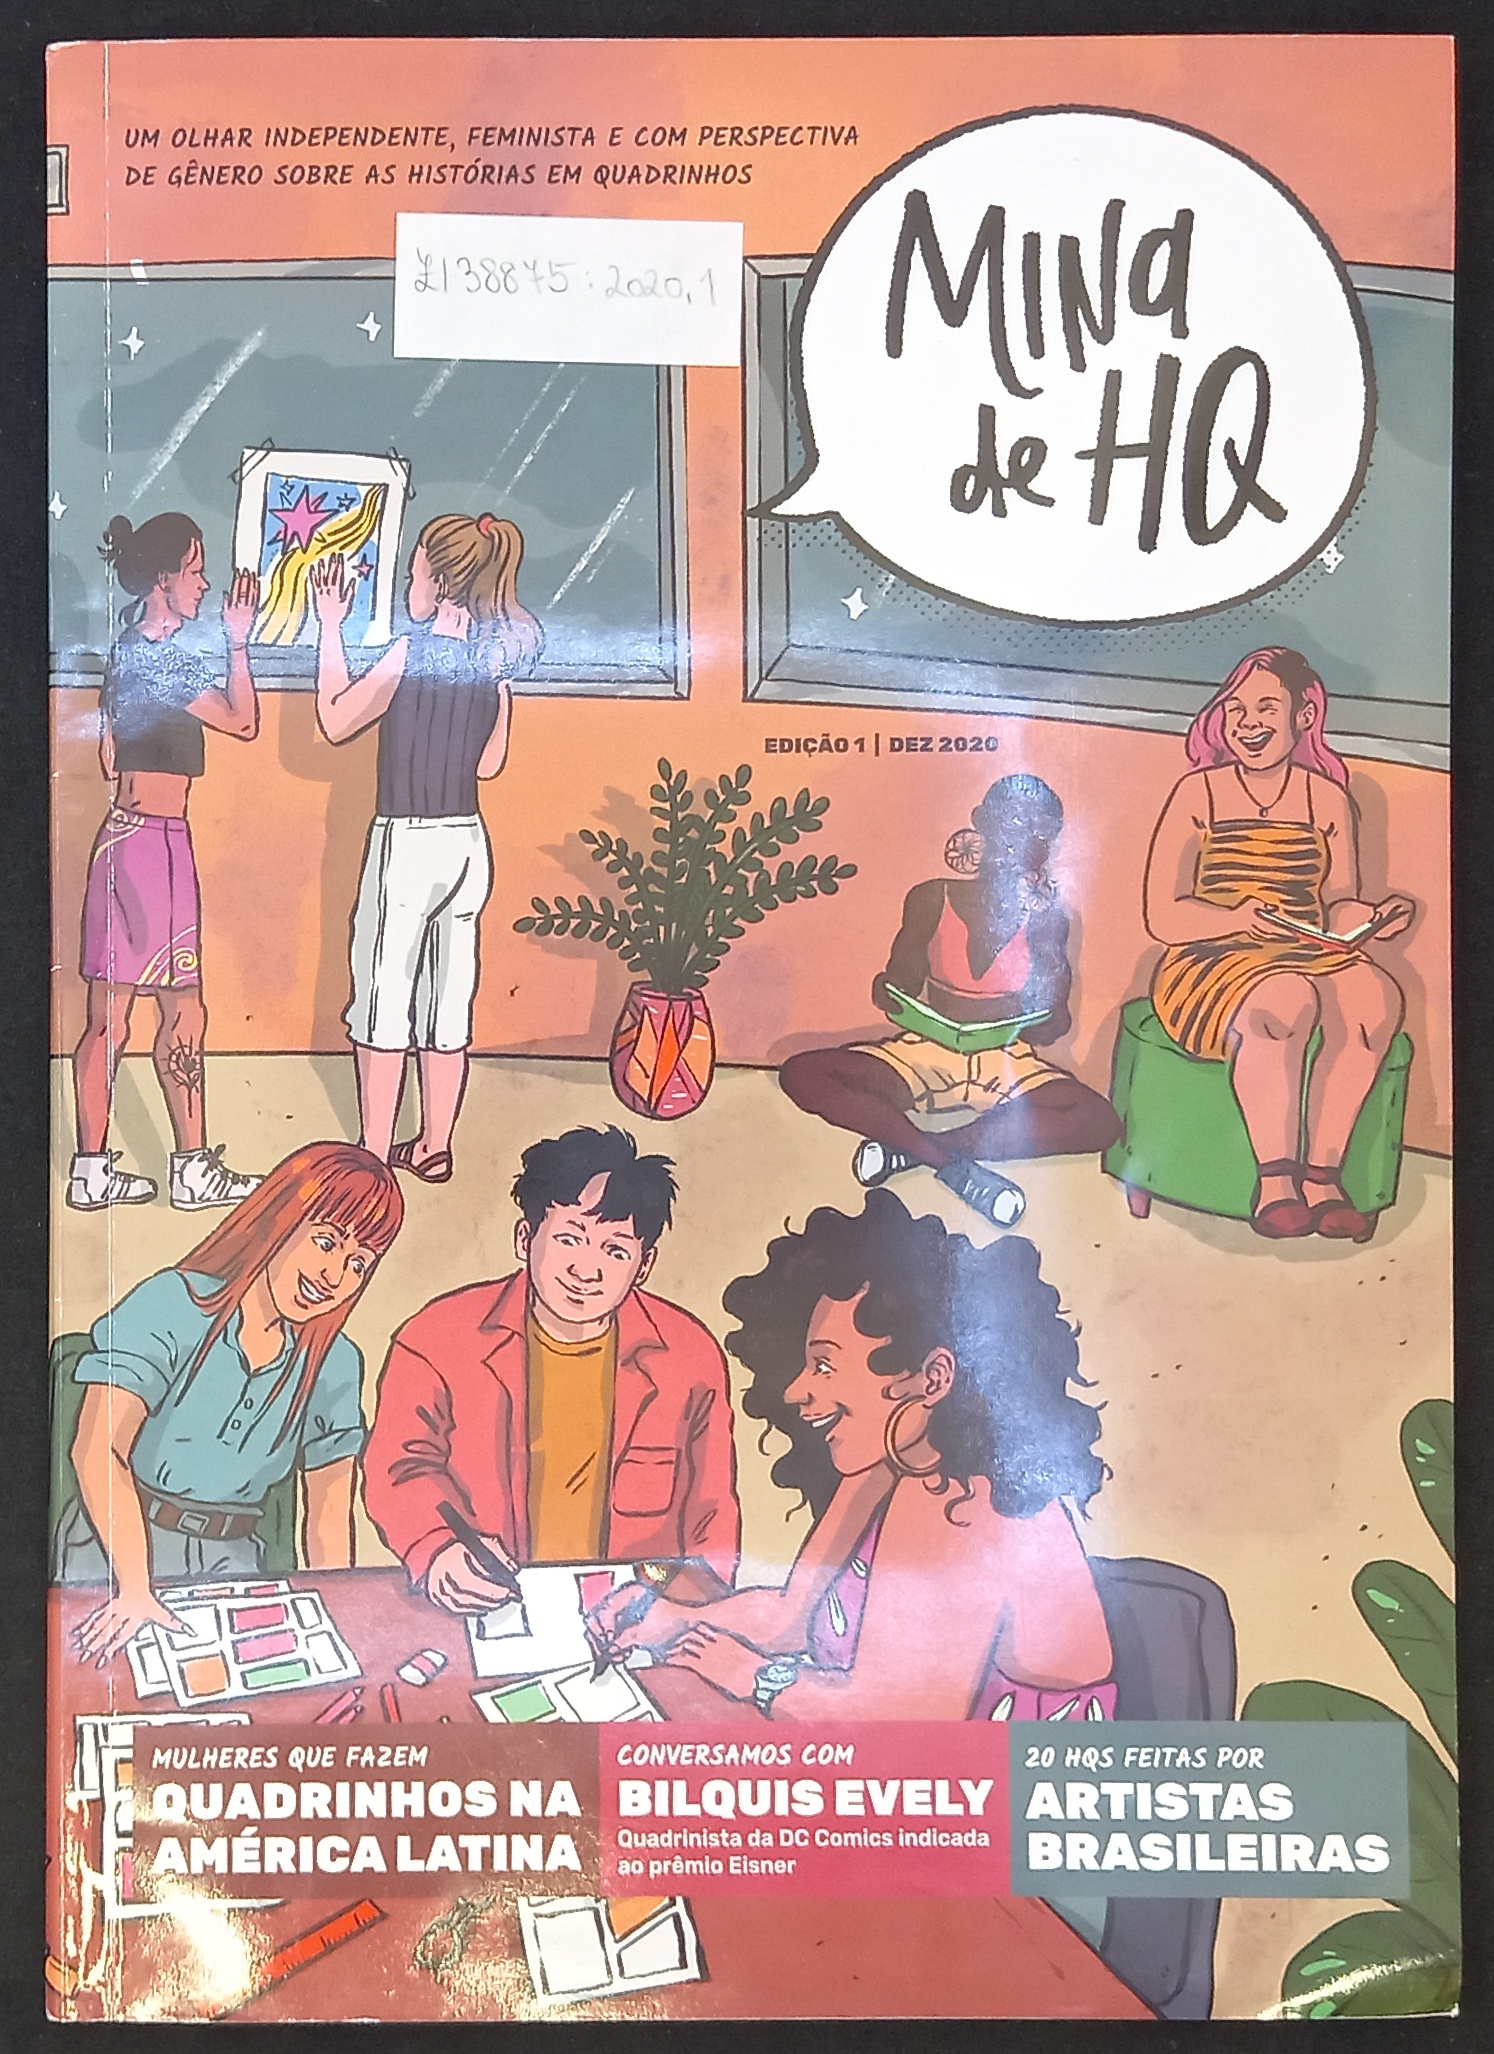 Neuerwerbungen bei Comics aus Brasilien